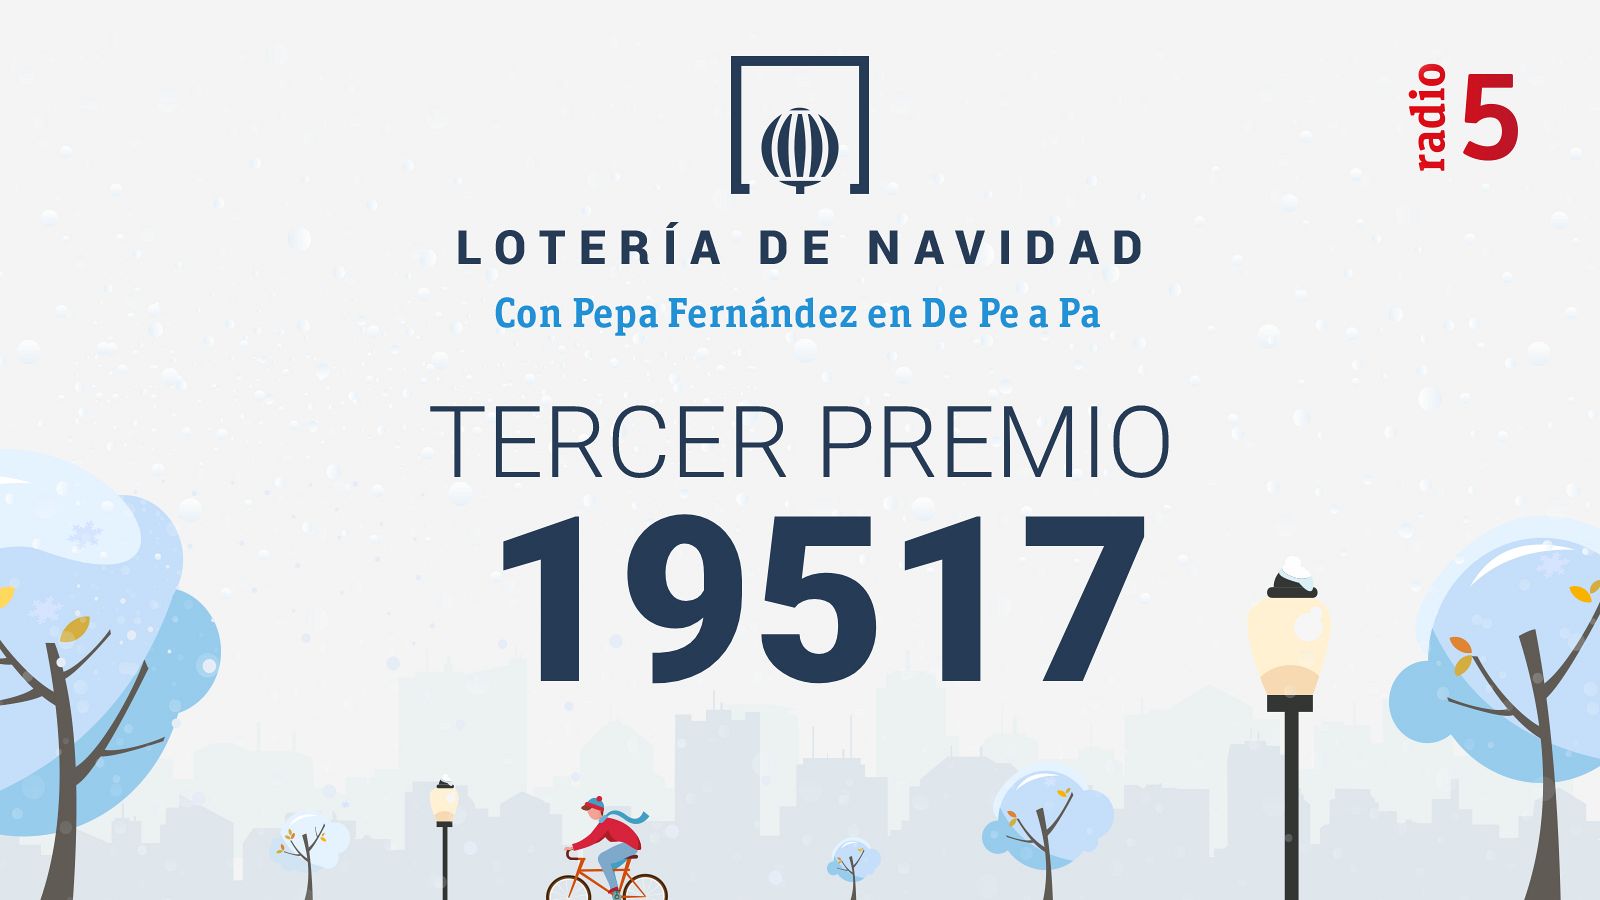 Las mañanas de RNE con Pepa Fernández - 19.517, tercer premio de la Lotería de Navidad 2021 - Escuchar ahora 